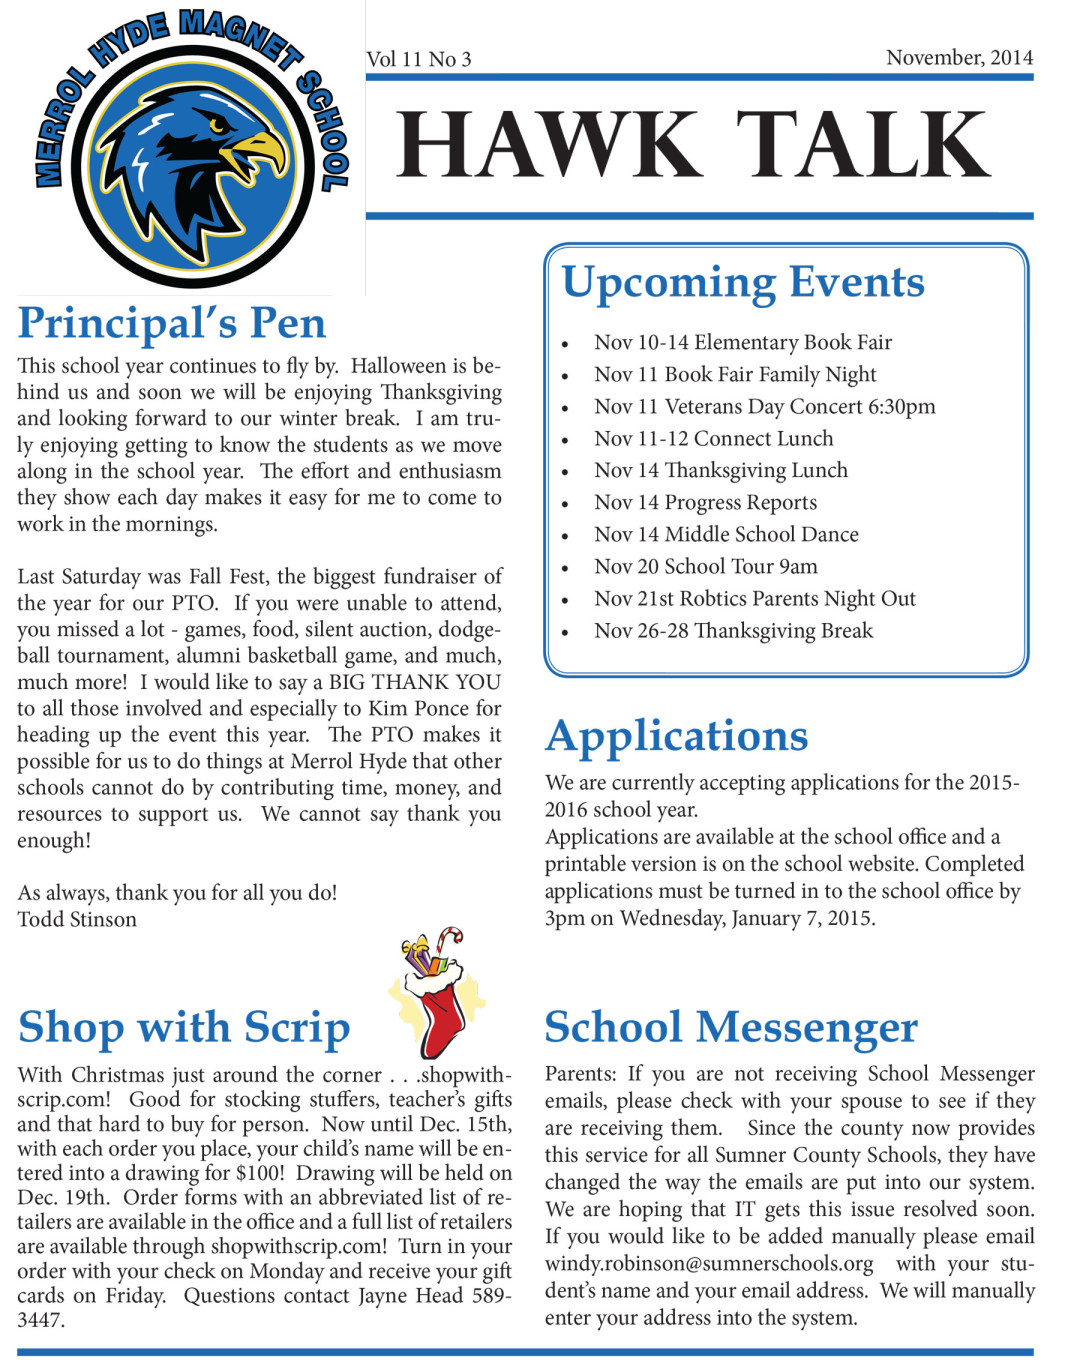 Hawk Talk Newsletter